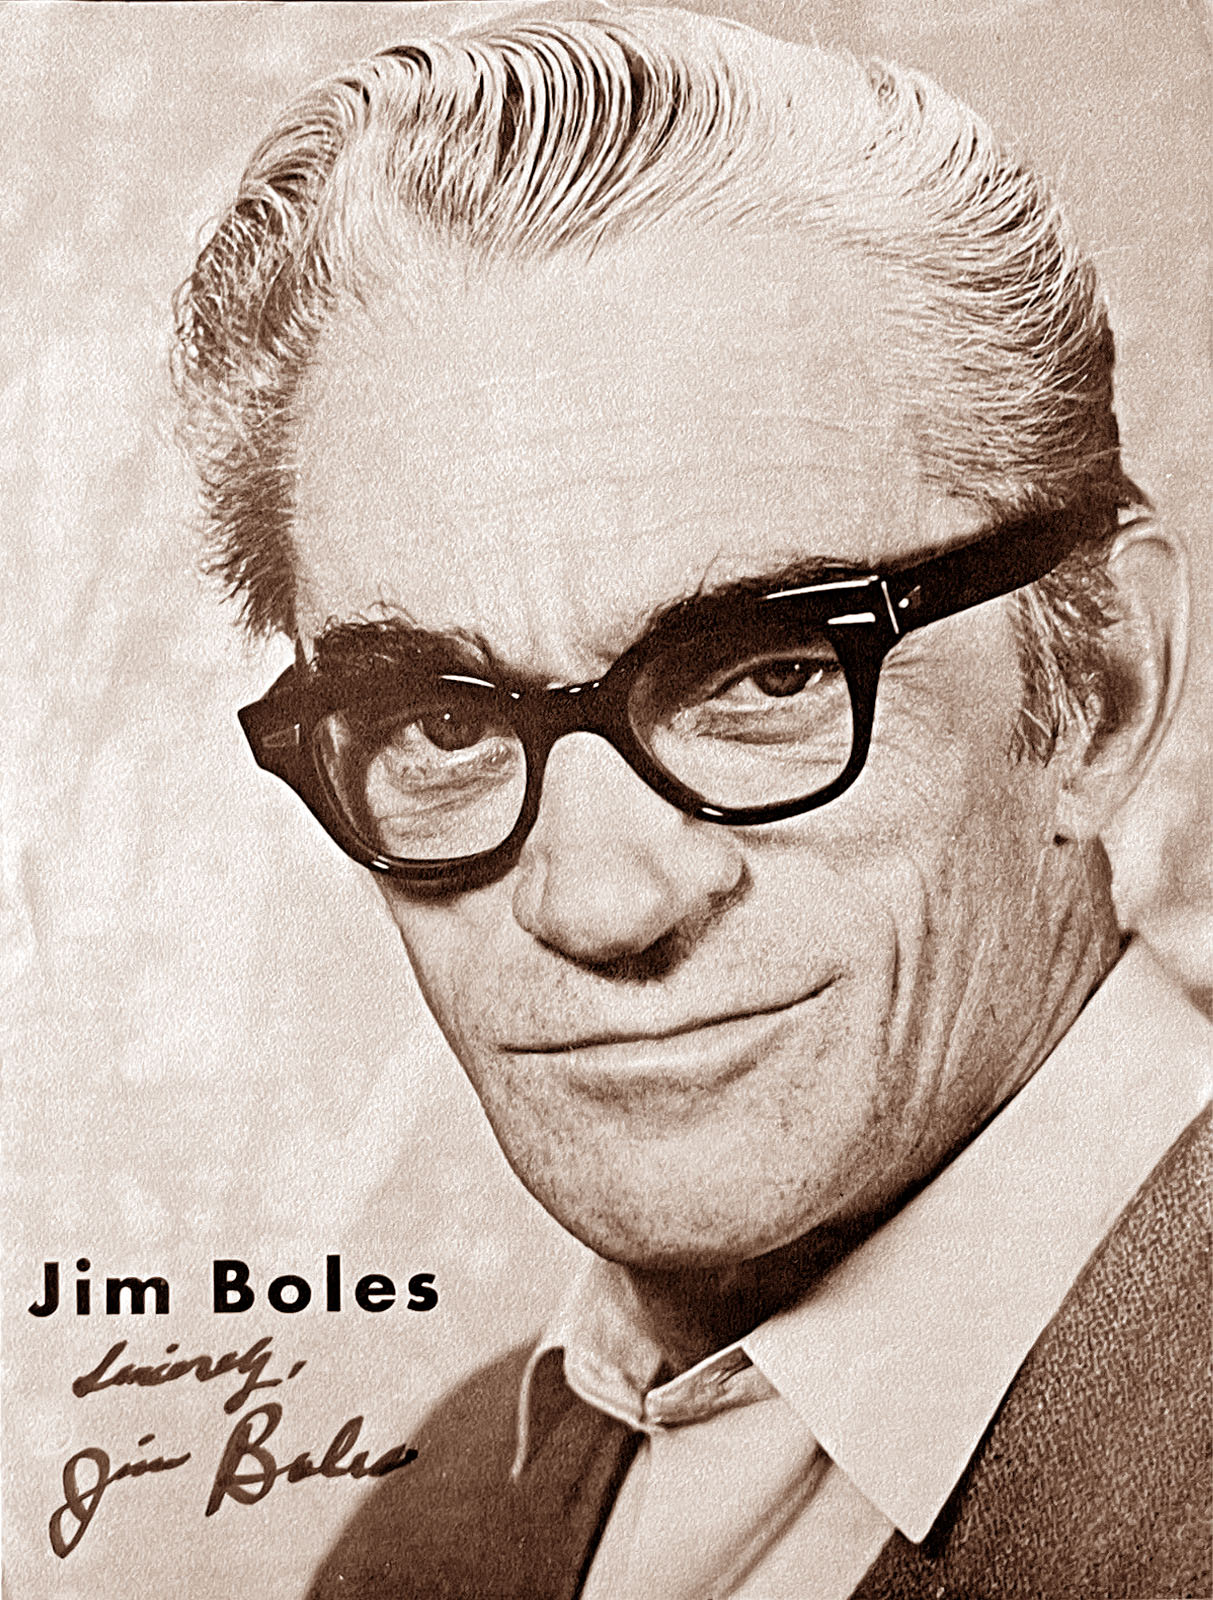 Jim Boles